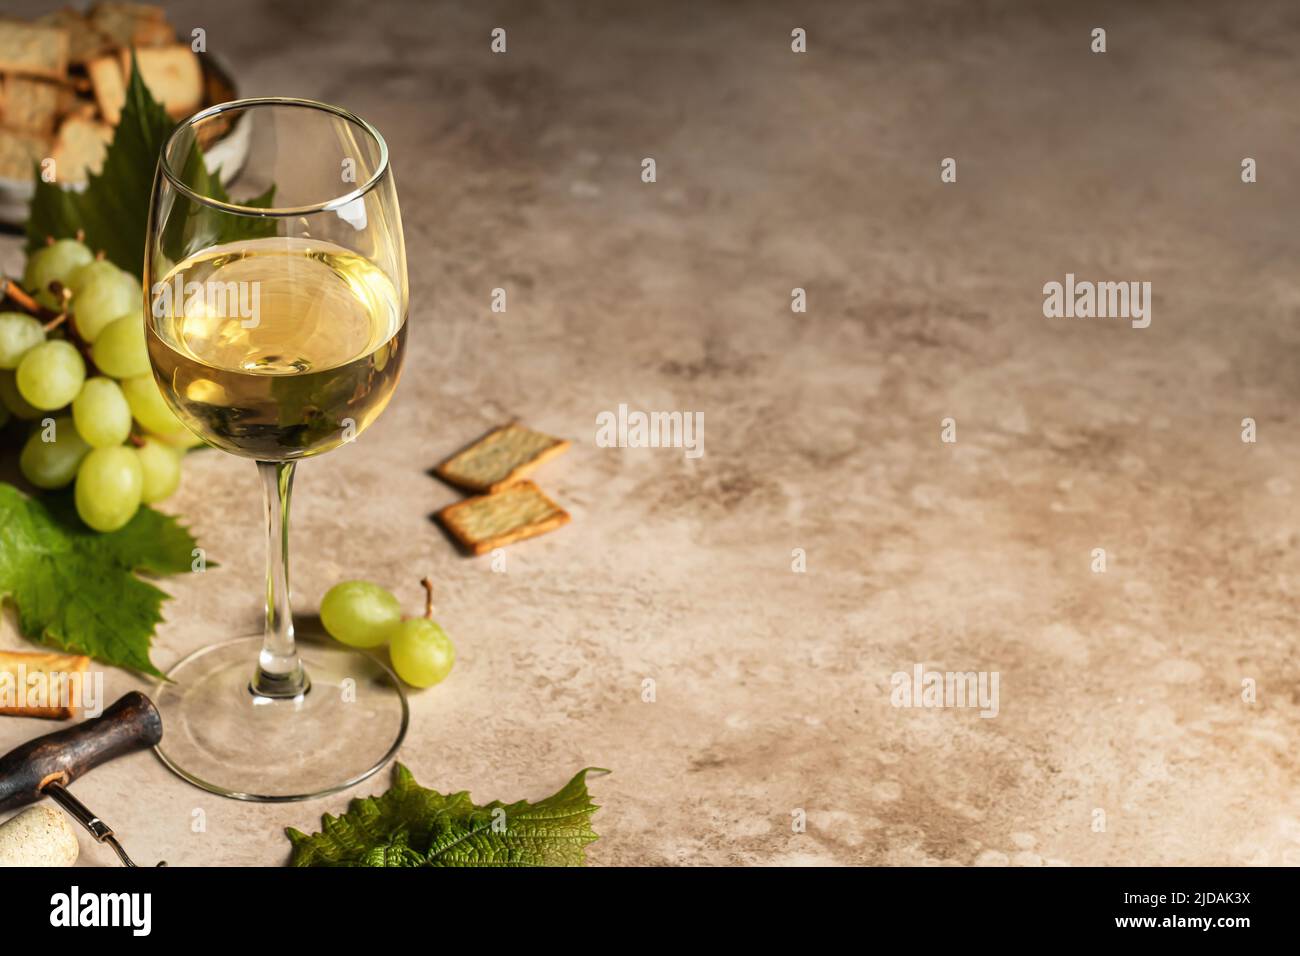 Un verre de vin blanc sur fond texturé avec des tire-bouchon, des raisins et des craquelins. Espace de texte. Décor rustique pour la carte des vins. Orientation de l'horisontal Banque D'Images